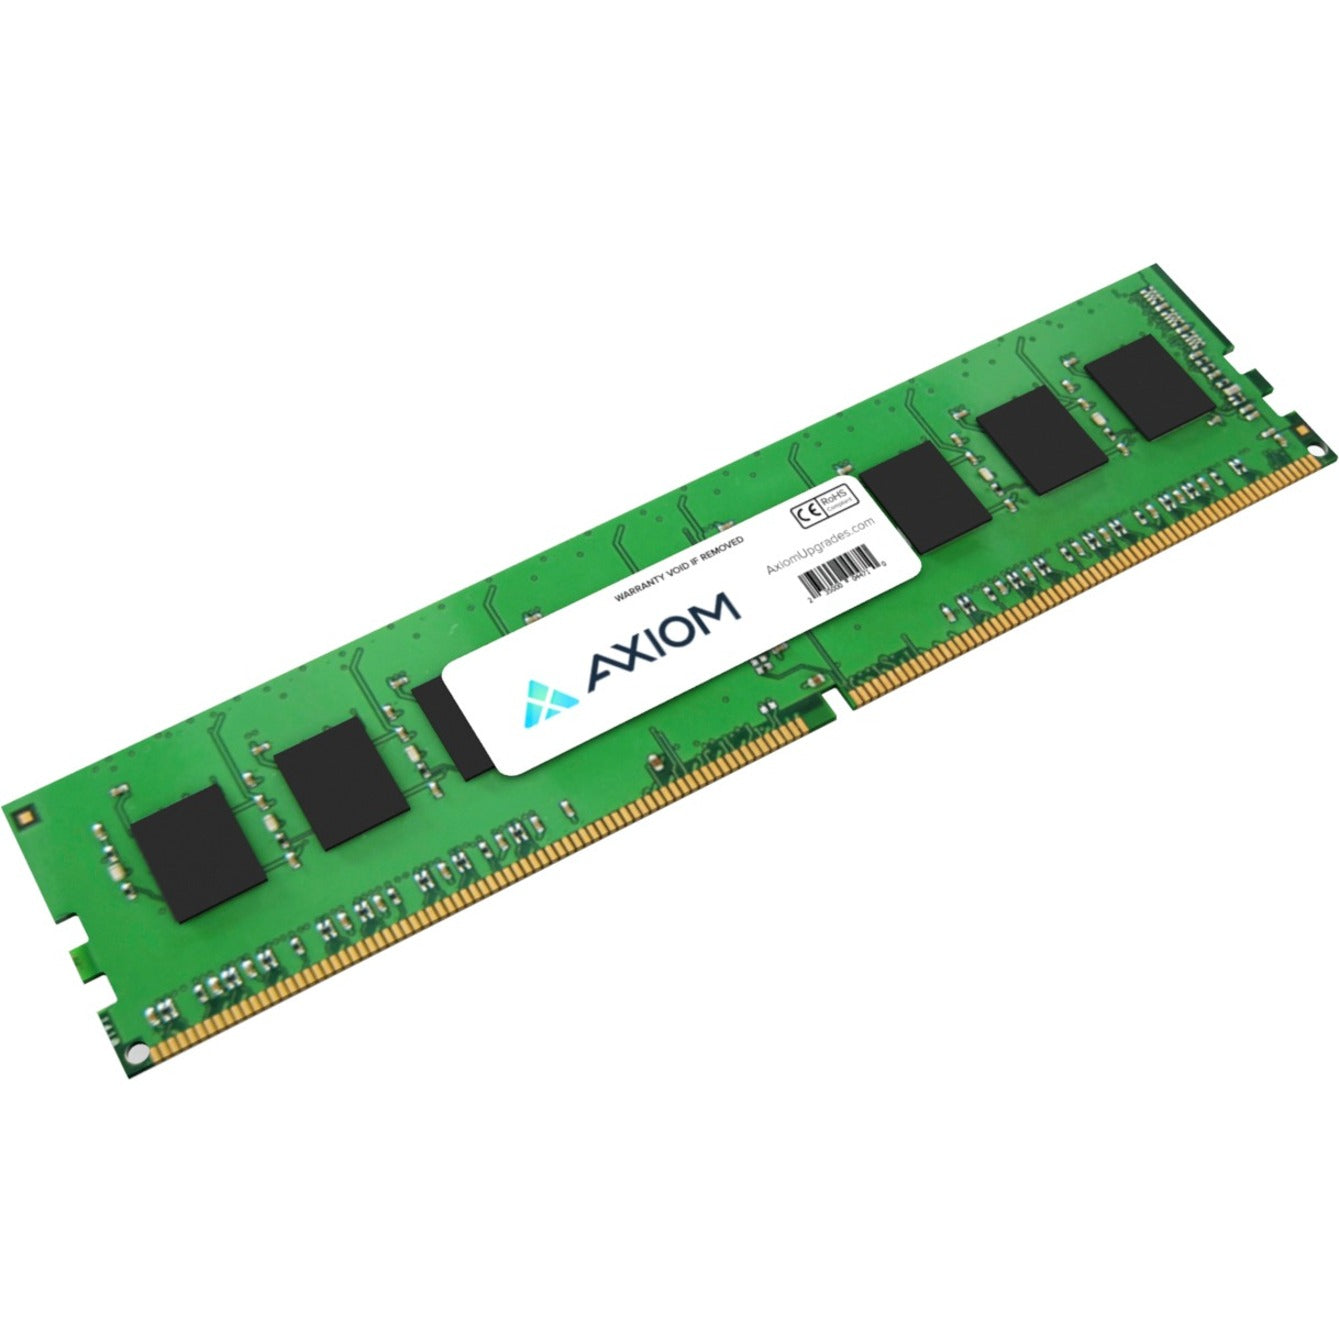 Axiom AB806062-AX 32GB DDR4 SDRAM Memory Module, Lifetime Warranty, ECC, 3200 MHz